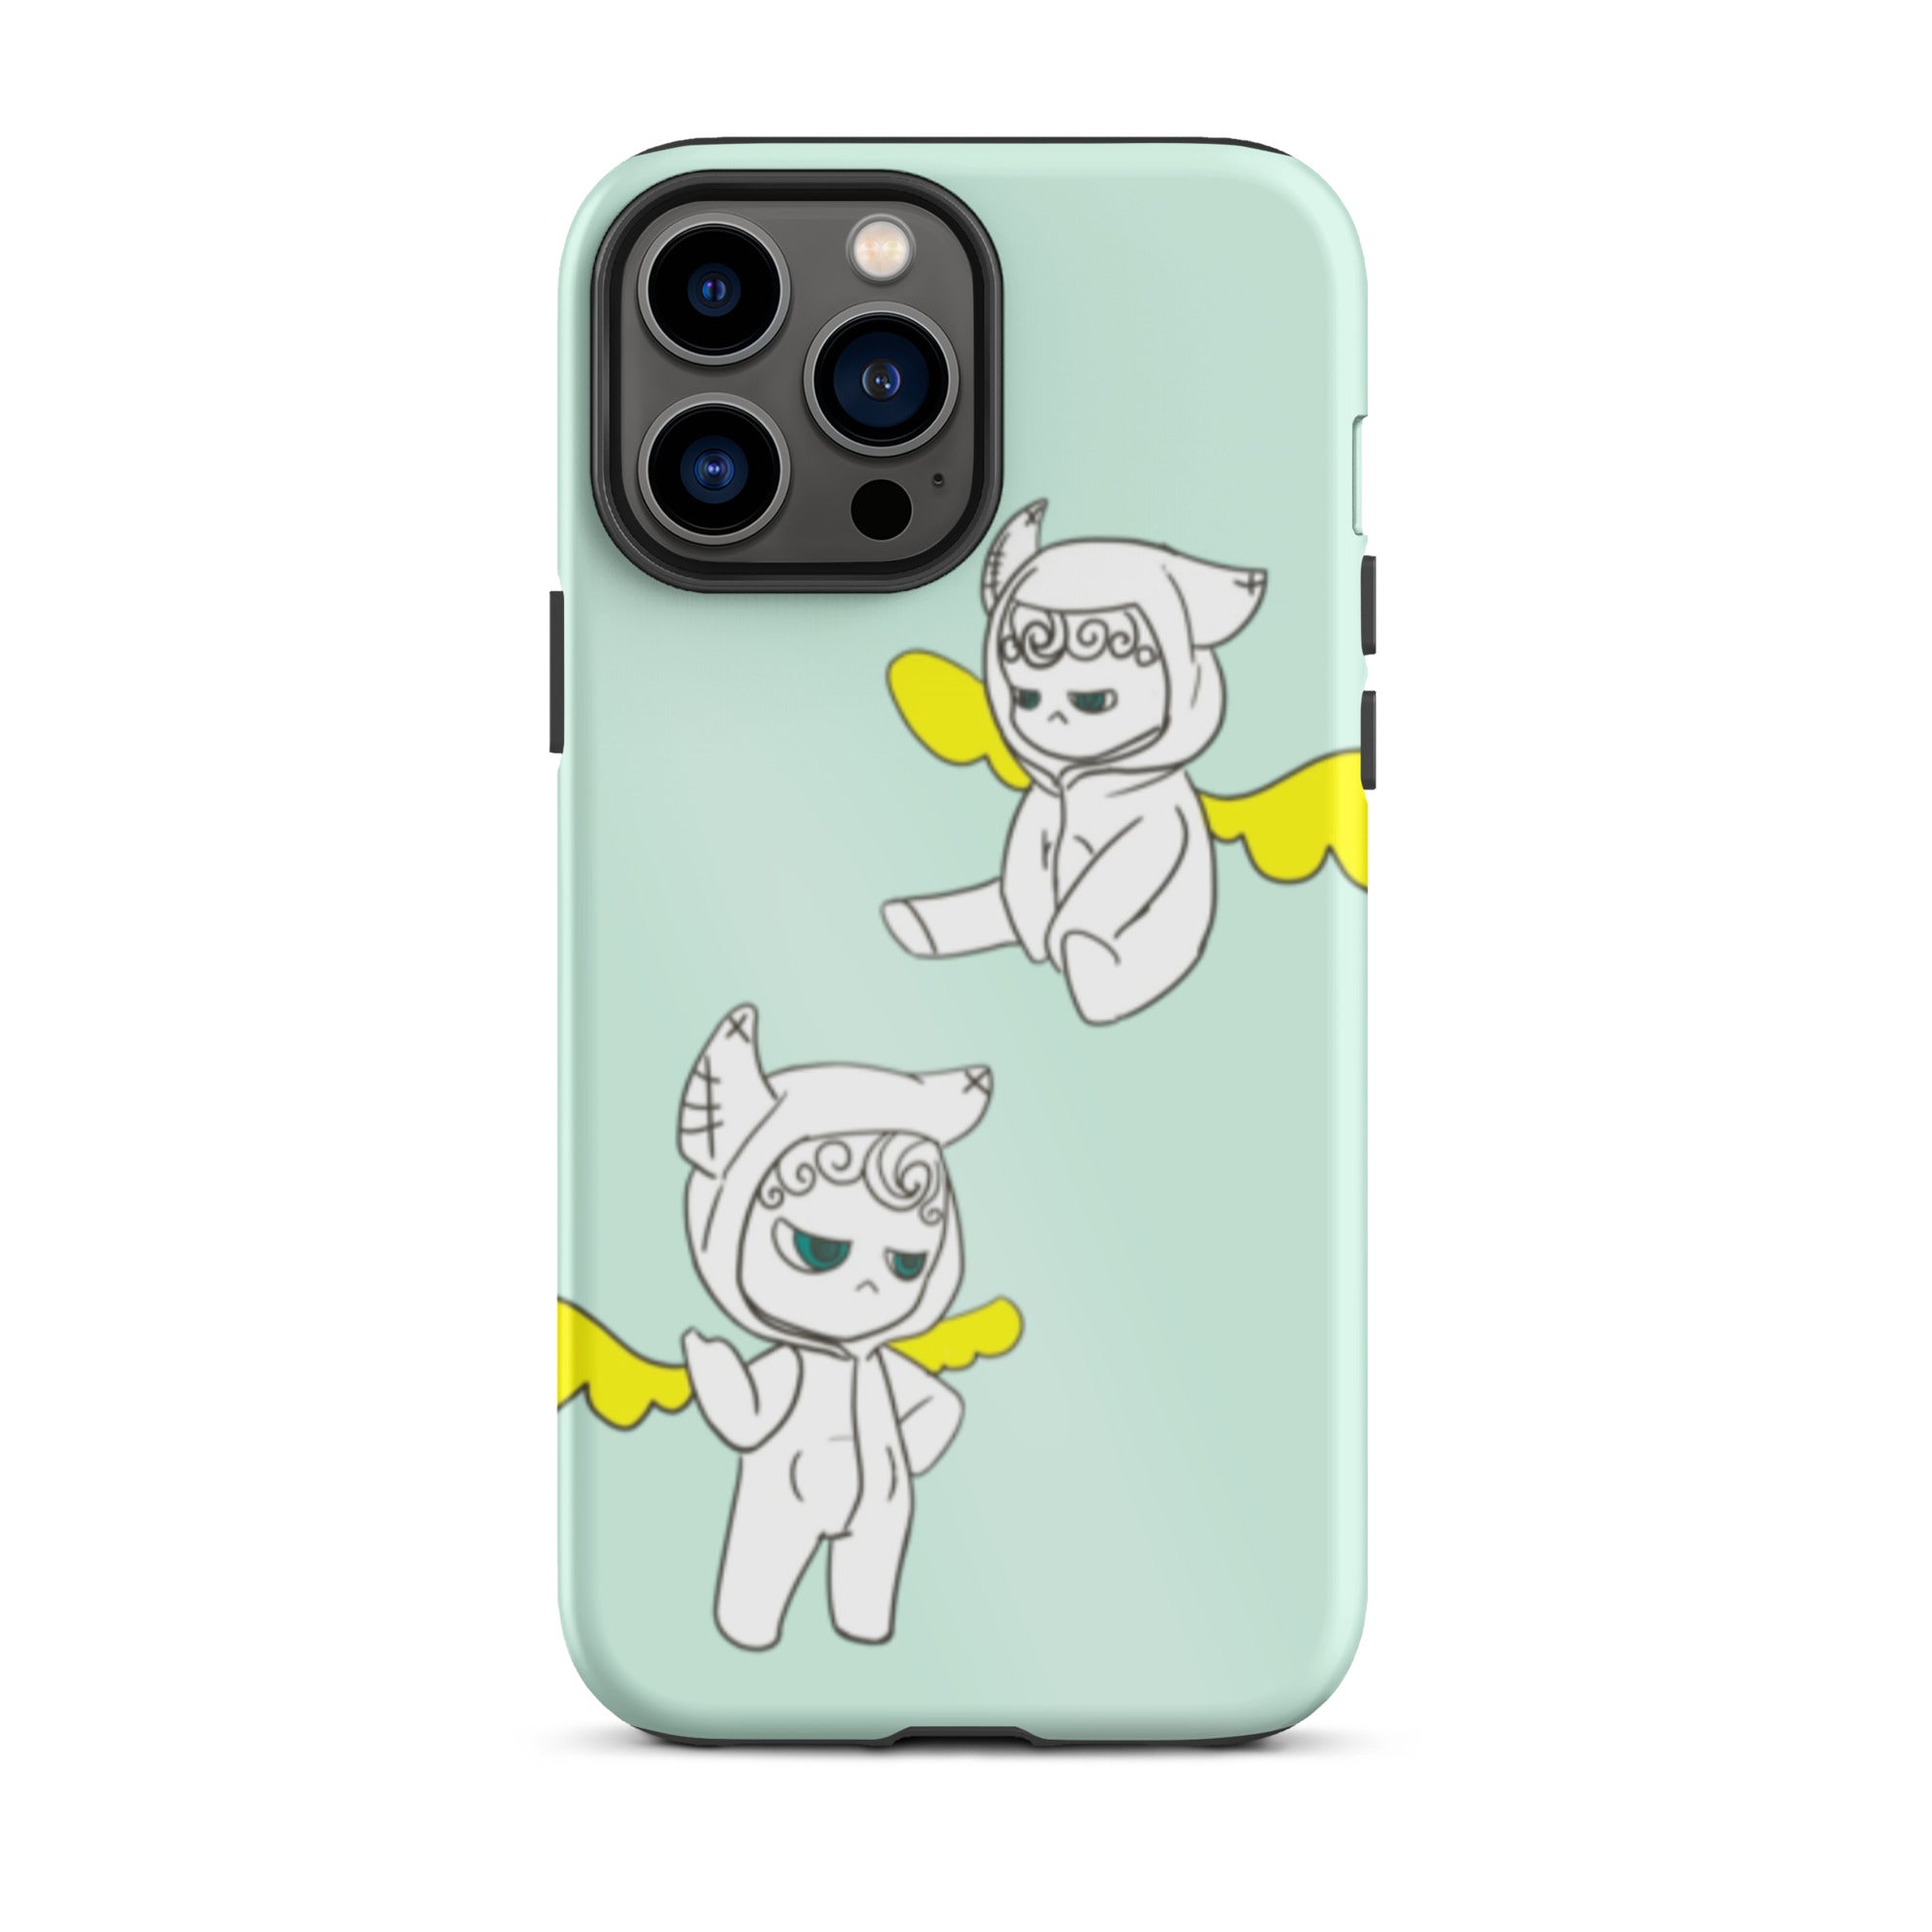 Cute Angel iPhone case